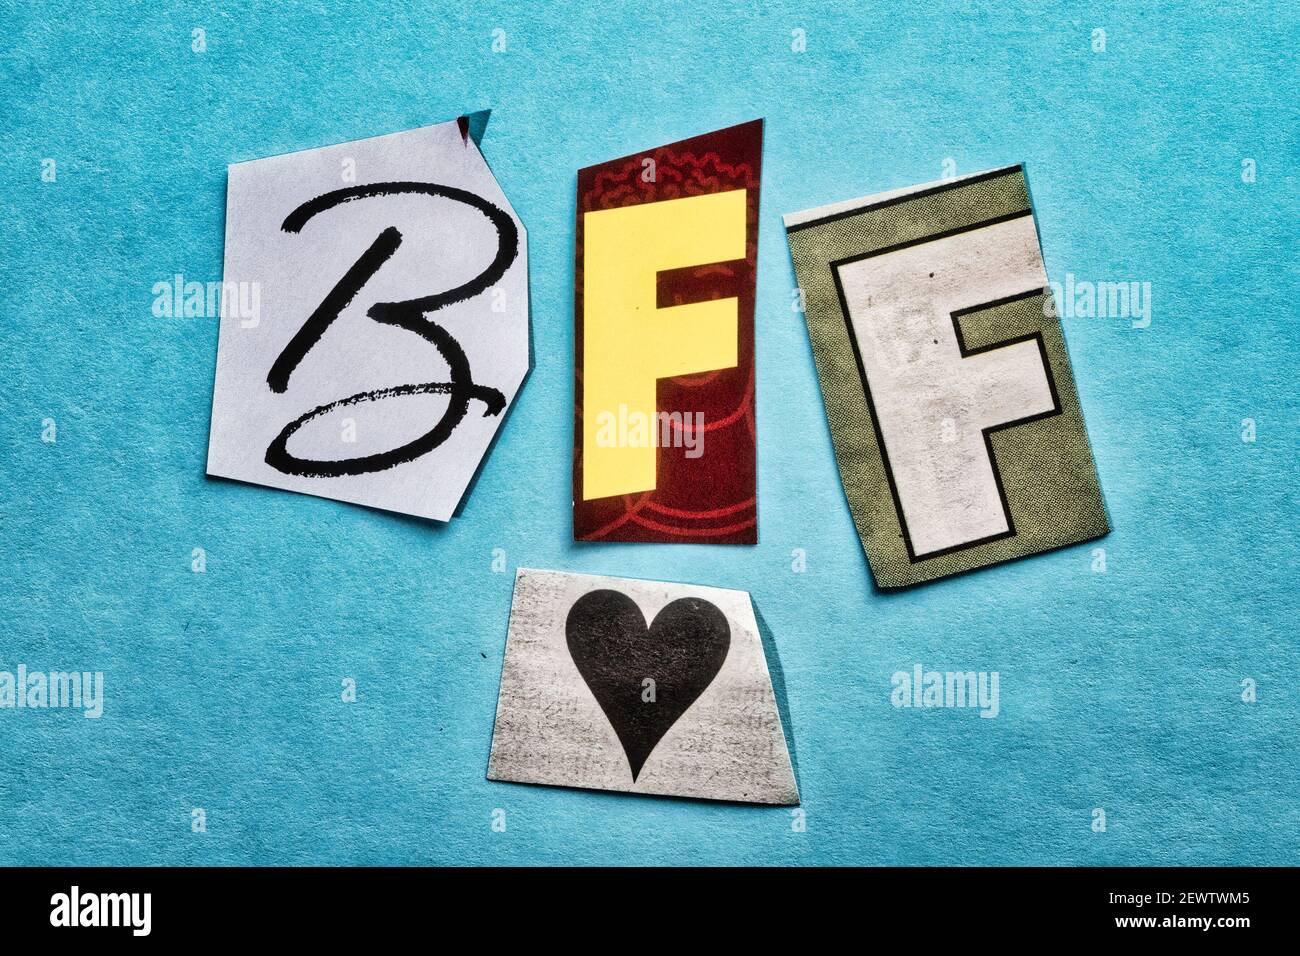 BFF é a sigla para Best Friend Forever, que significa melhores